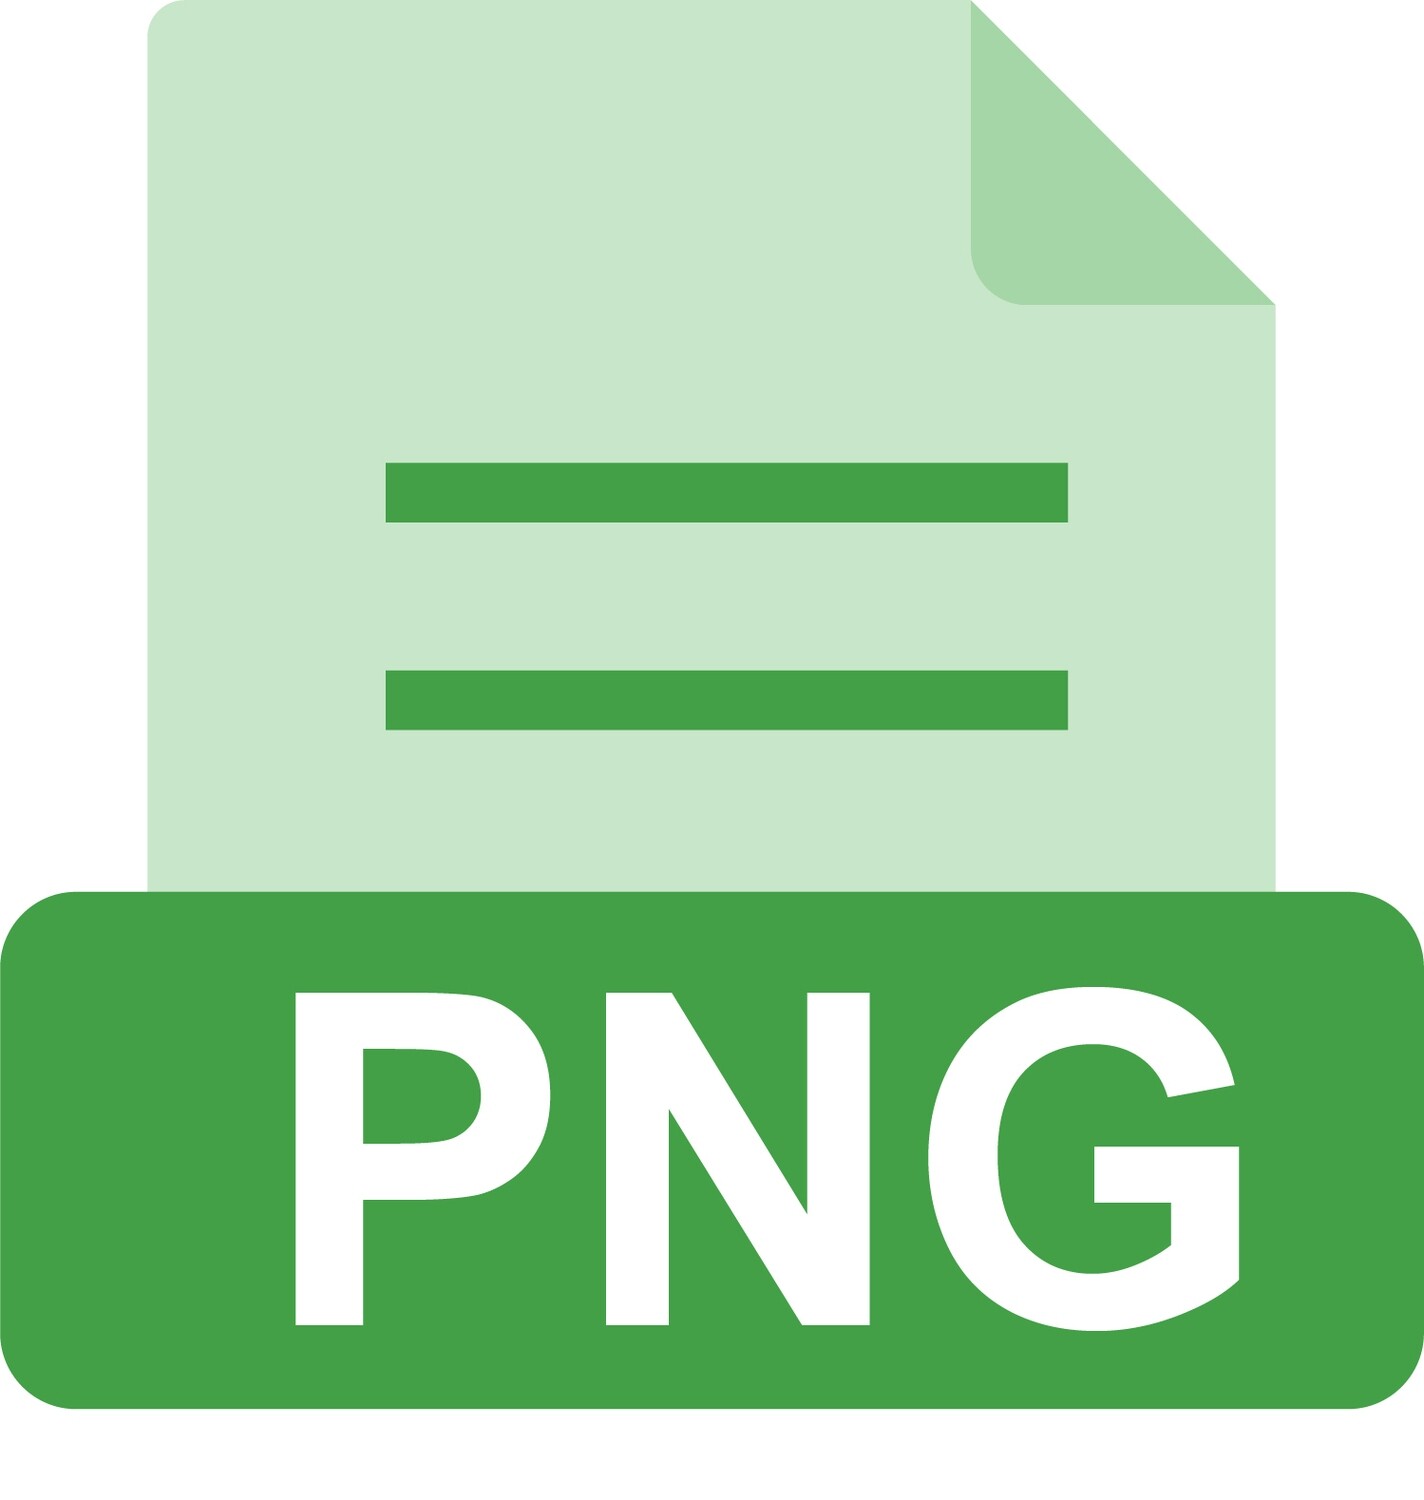 E-File: PNG, PE North Carolina